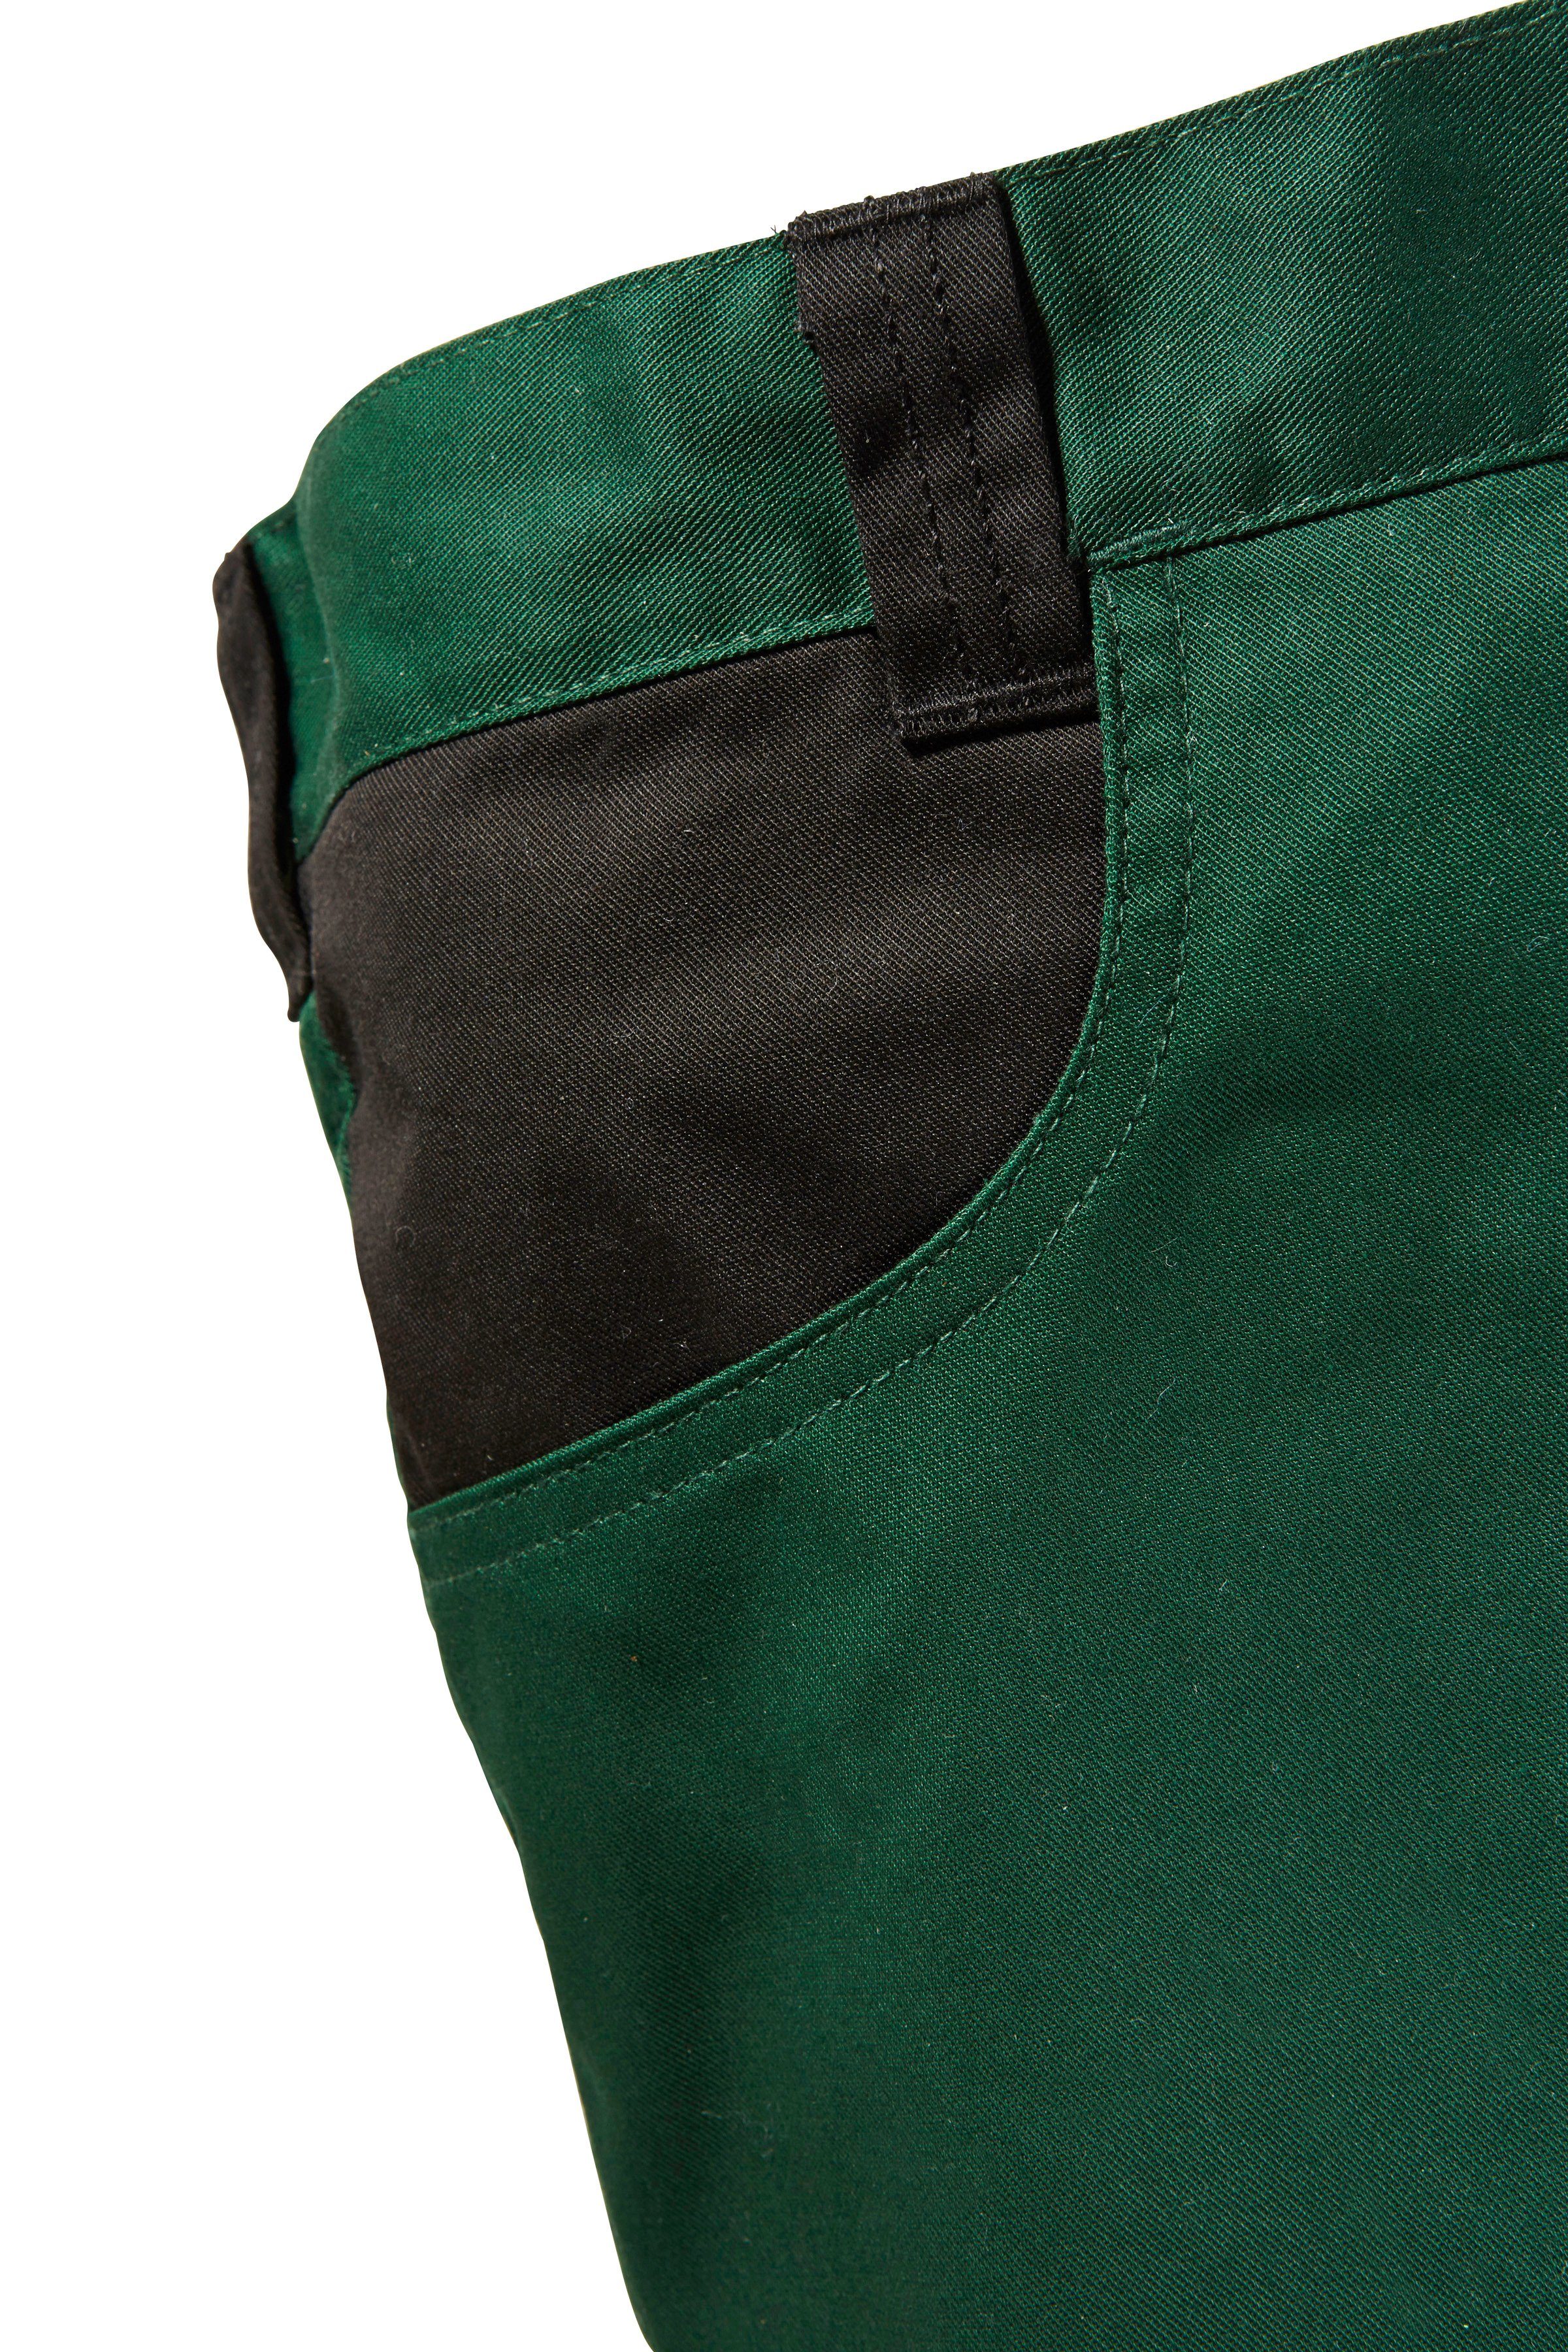 safety& Pull Knieverstärkung Arbeitshose grün-schwarz mit more